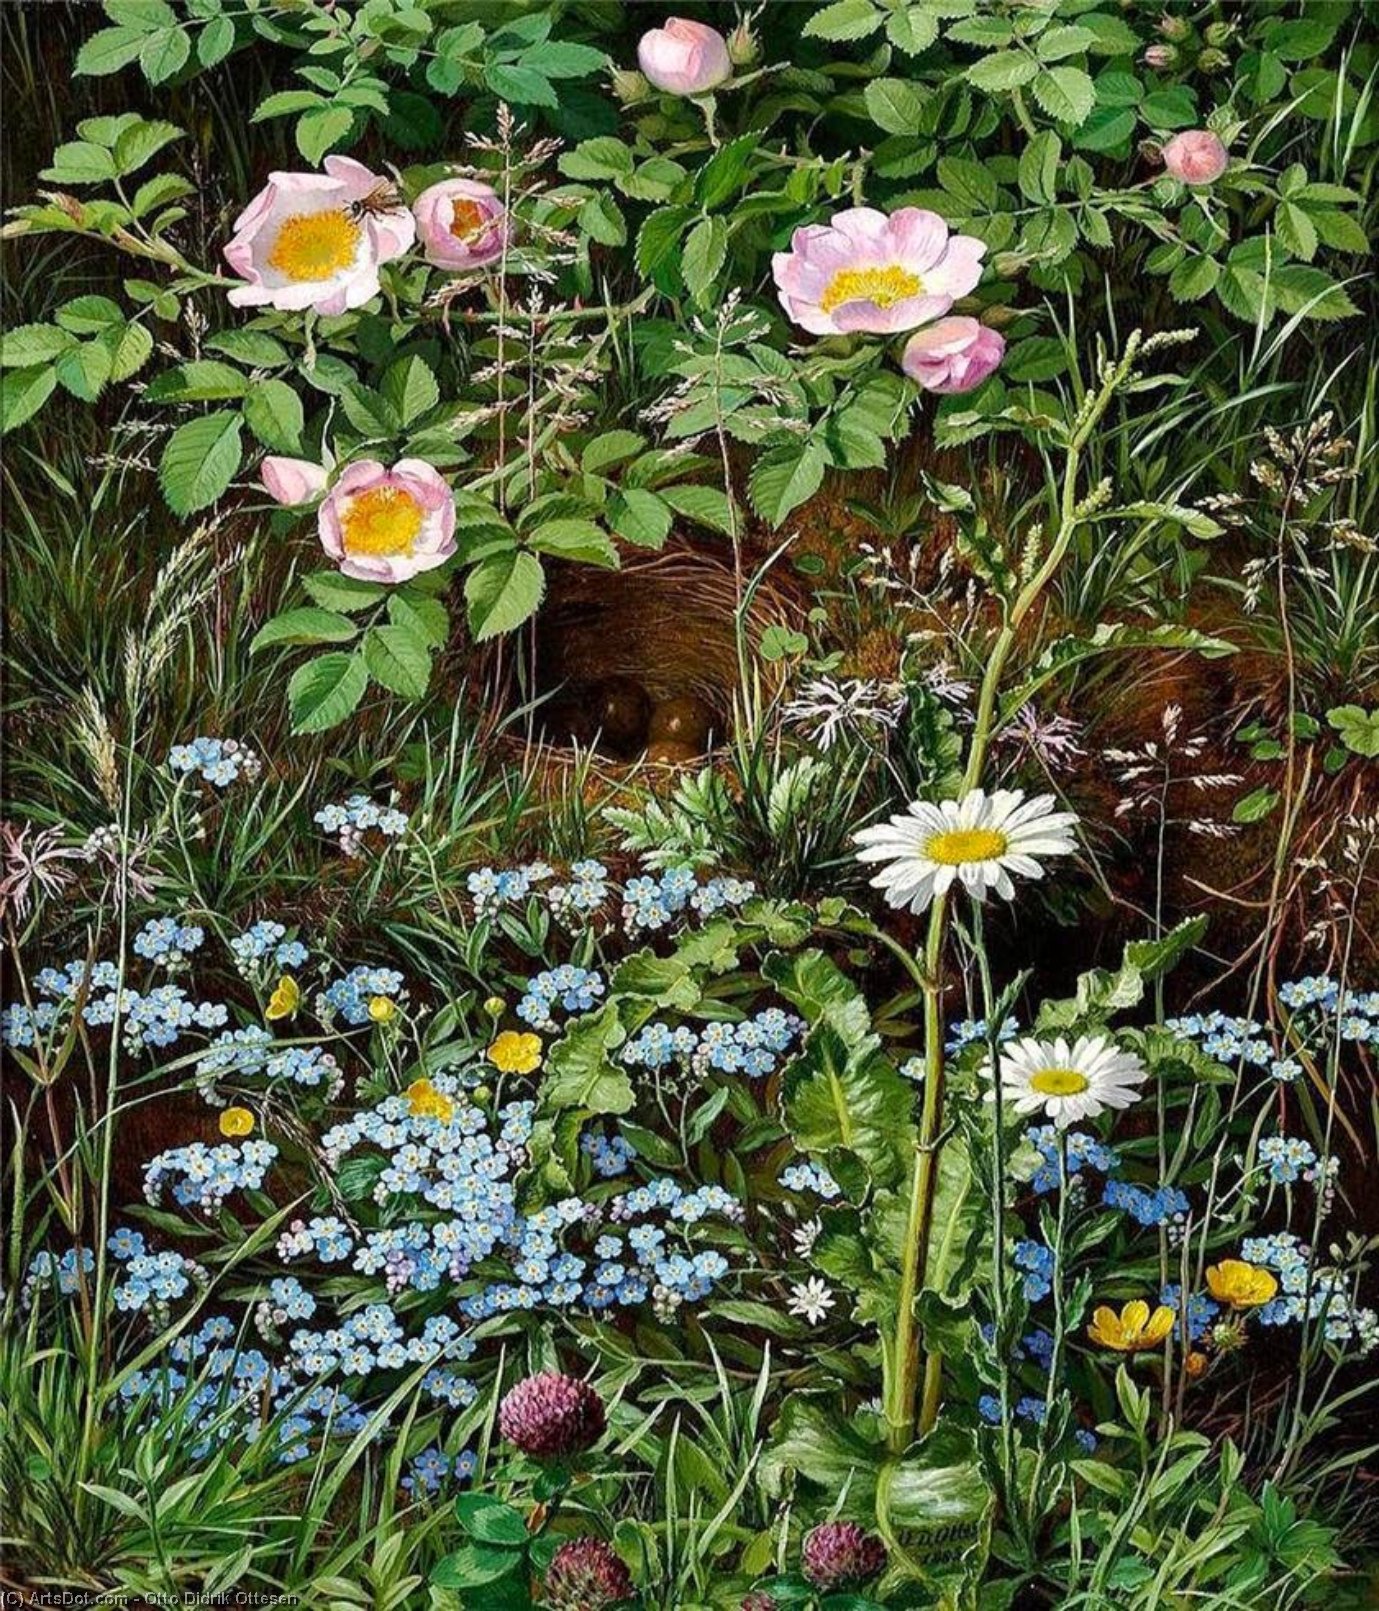 Wikioo.org - Bách khoa toàn thư về mỹ thuật - Vẽ tranh, Tác phẩm nghệ thuật Otto Didrik Ottesen - Dog roses, forget-me-nots, daisies, buttercups and clover